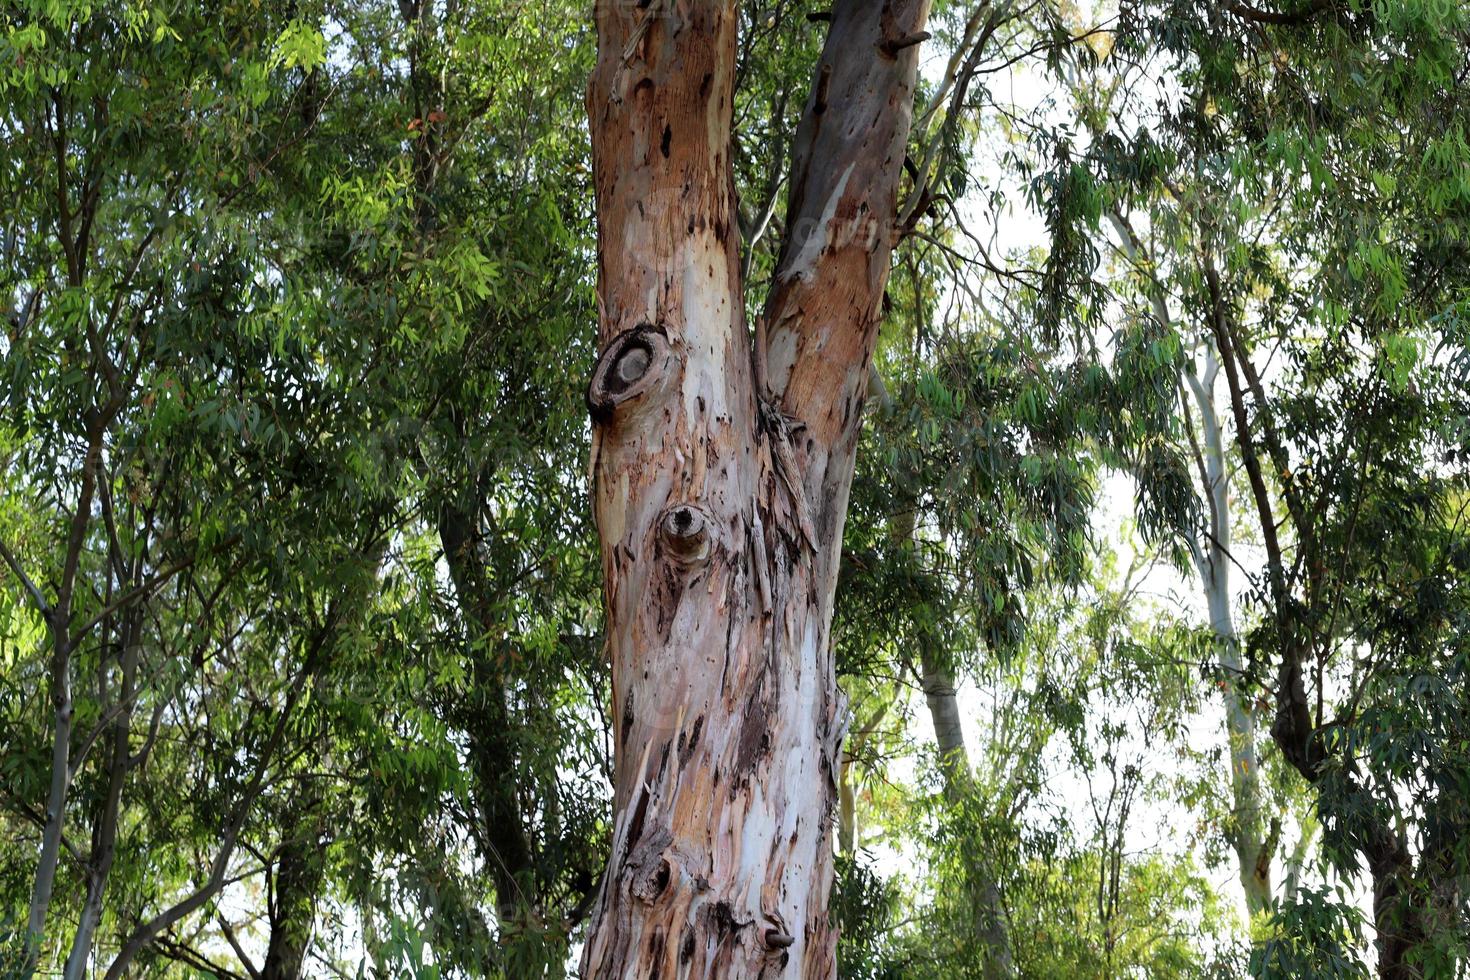 der Stamm eines hohen Baumes in einem Stadtpark. foto